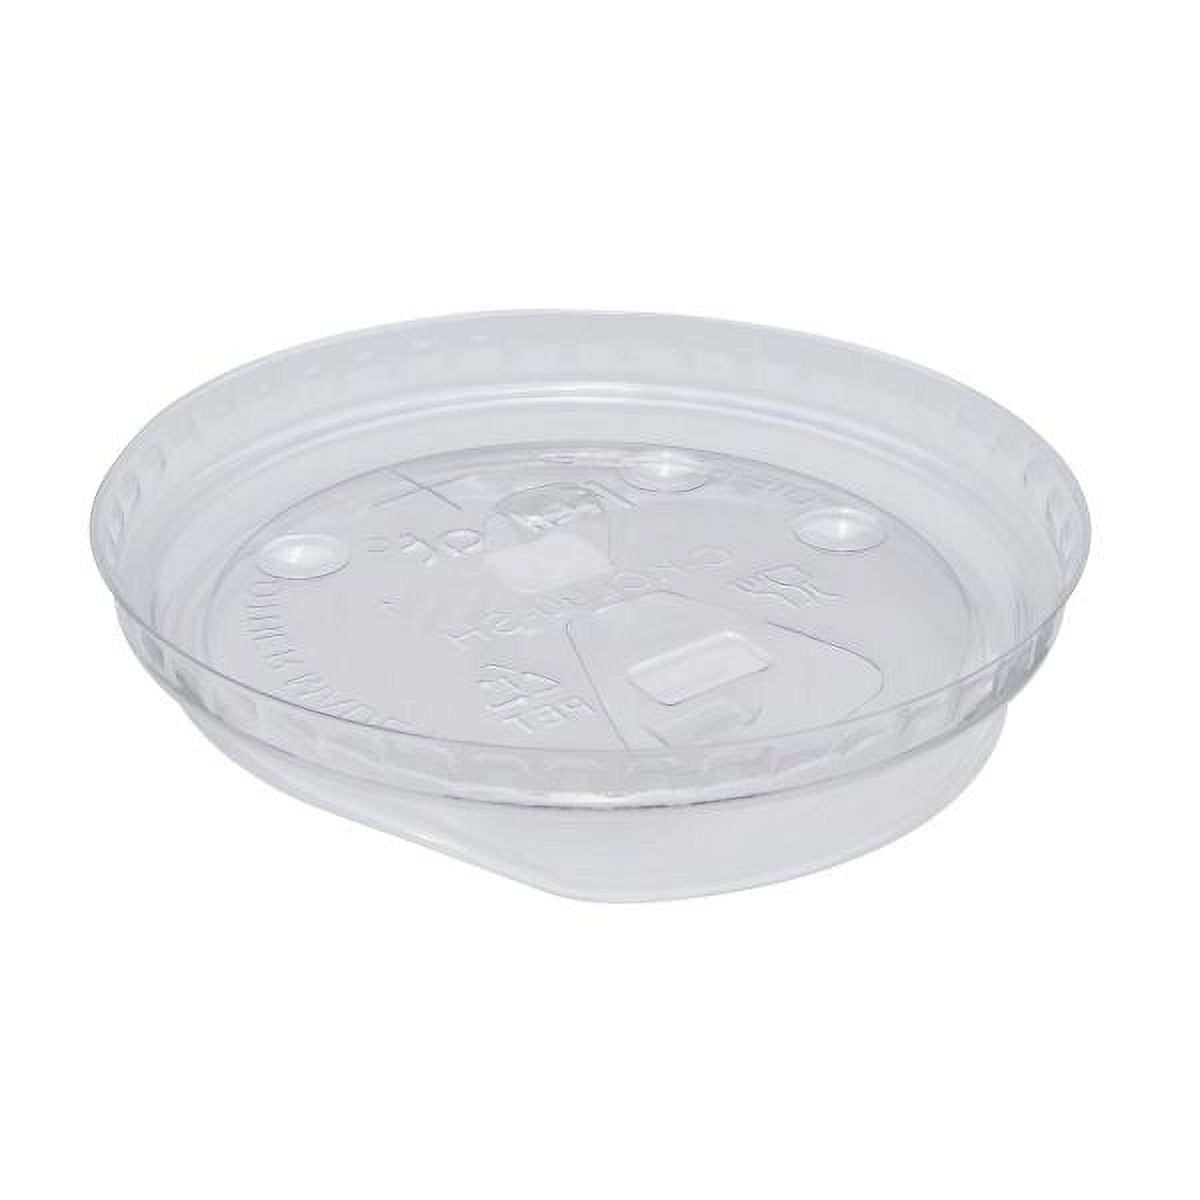 Karat Strawless Sipper lids for 12-24oz PET Plastic cup - 98mm